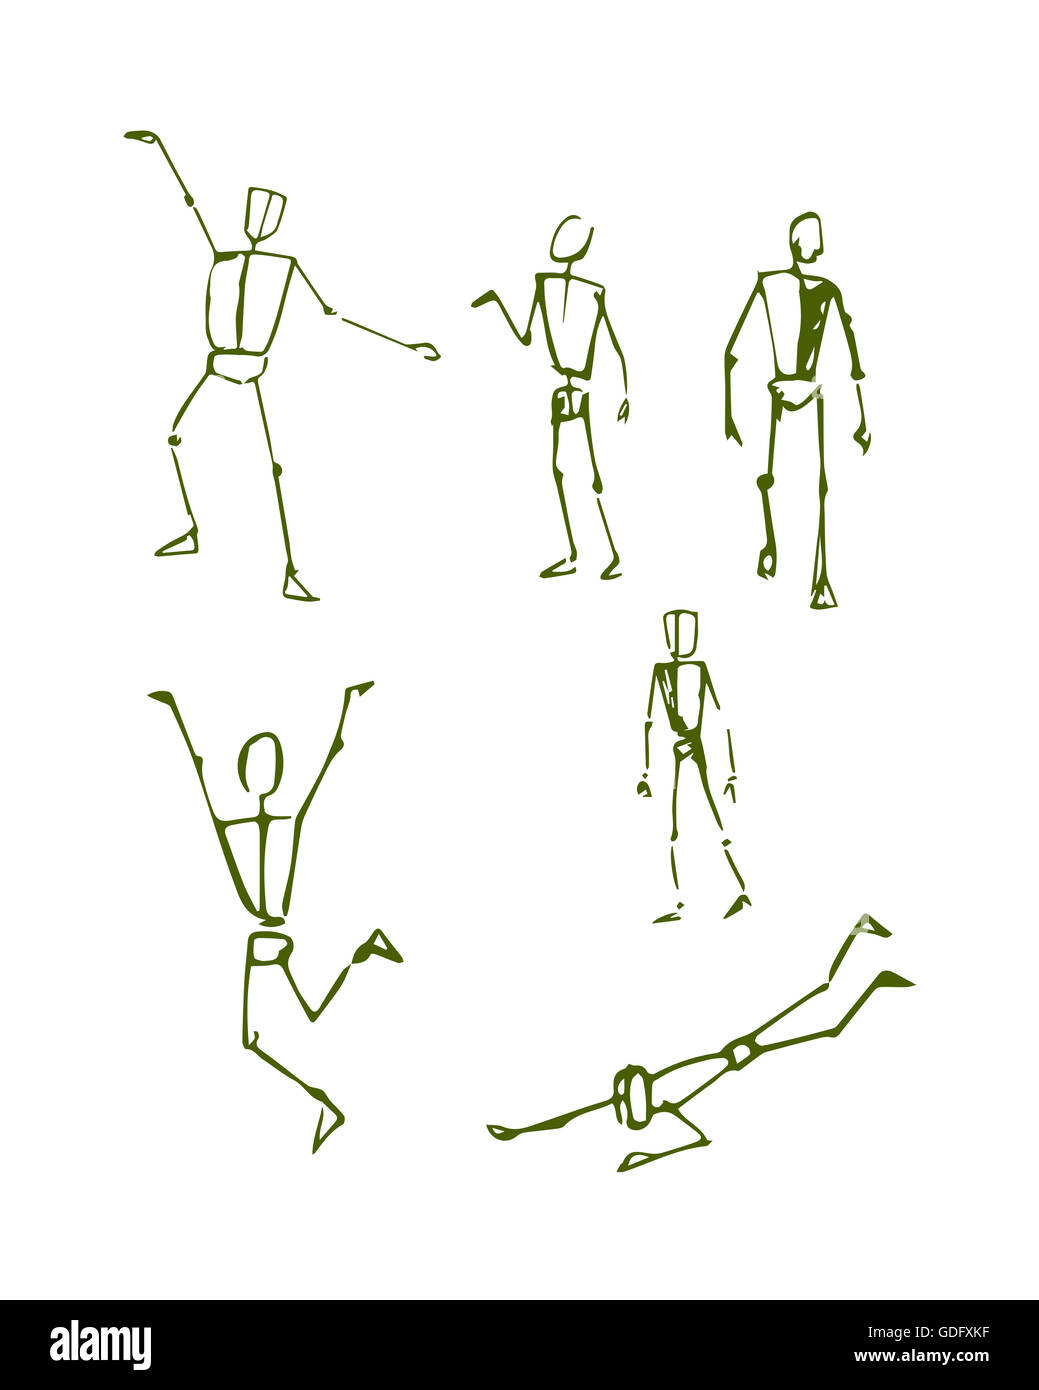 Handgezeichnete Illustrationen oder Zeichnung von verschiedenen Männern menschlichen Körperpositionen in einer Skizze-Stil Stockfoto